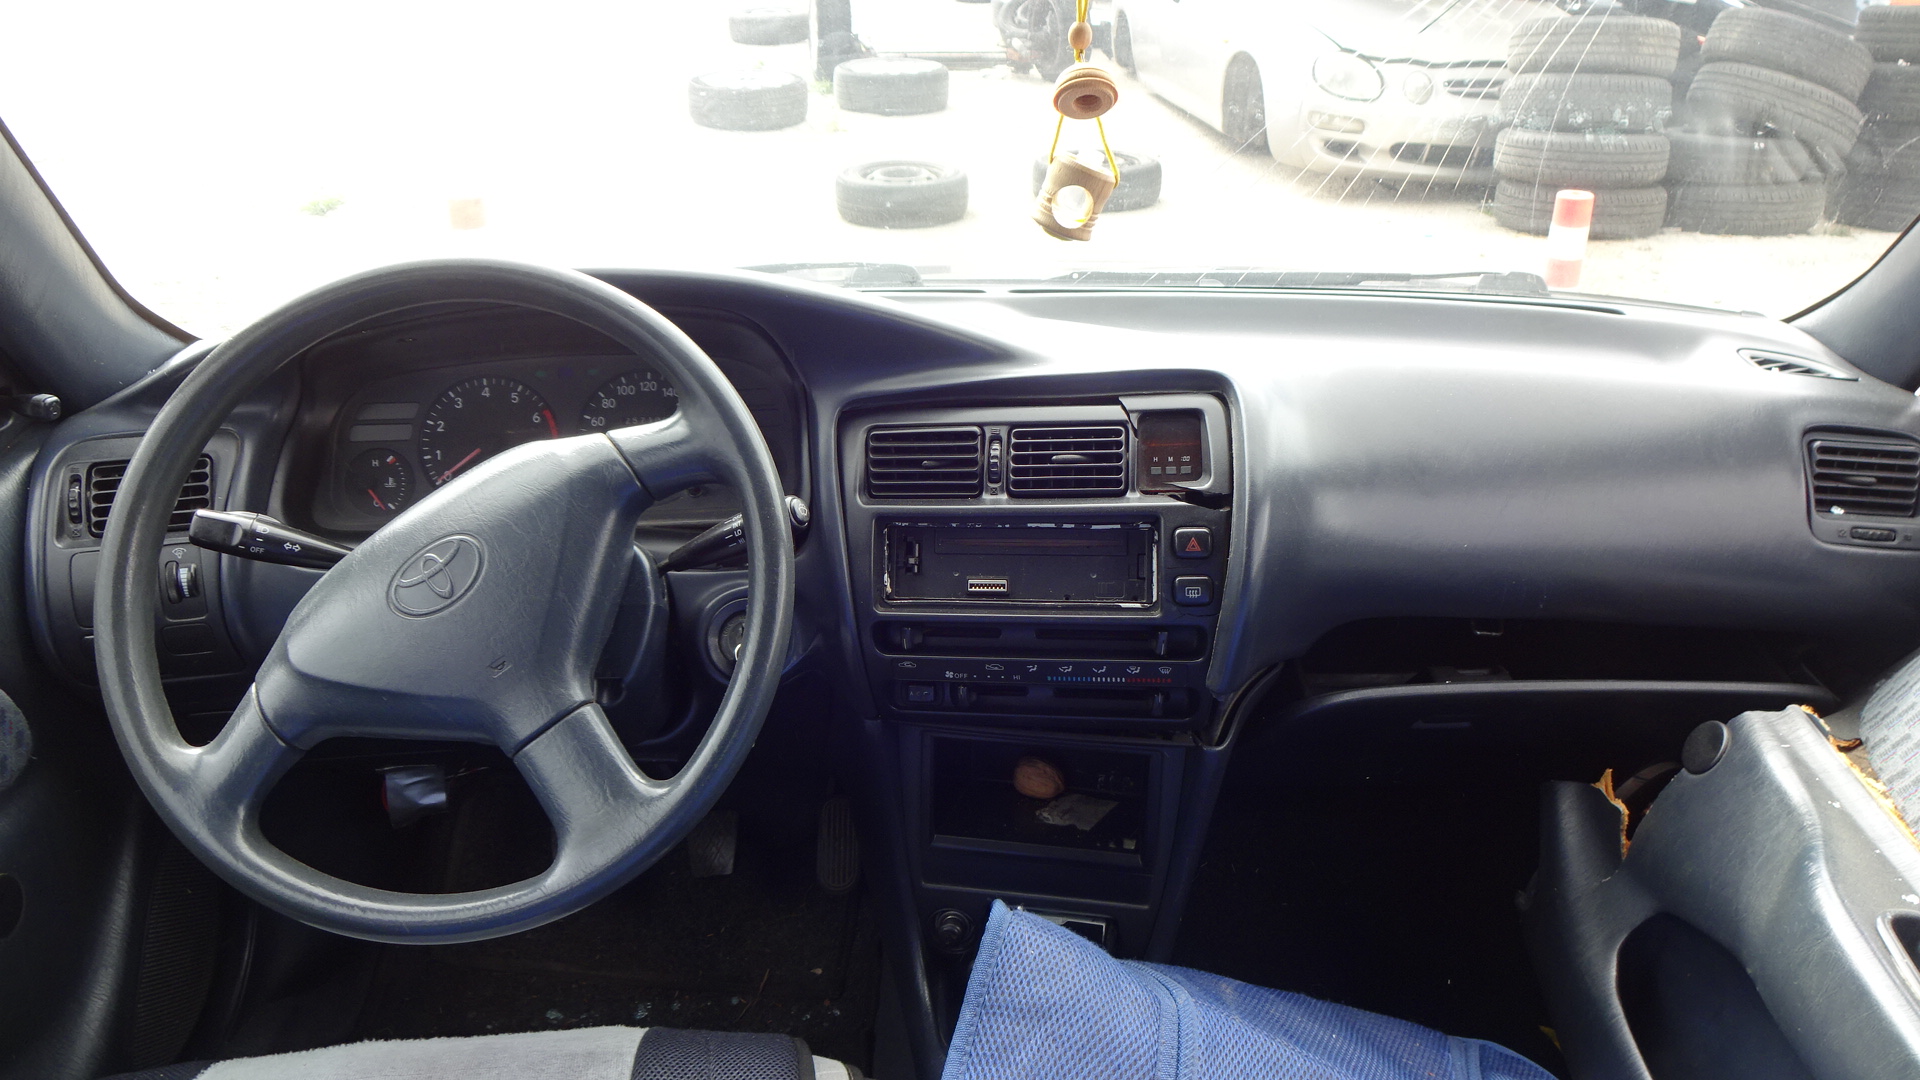 Τιμόνι (Βολάν) Toyota Corolla ’97 Προσφορά.